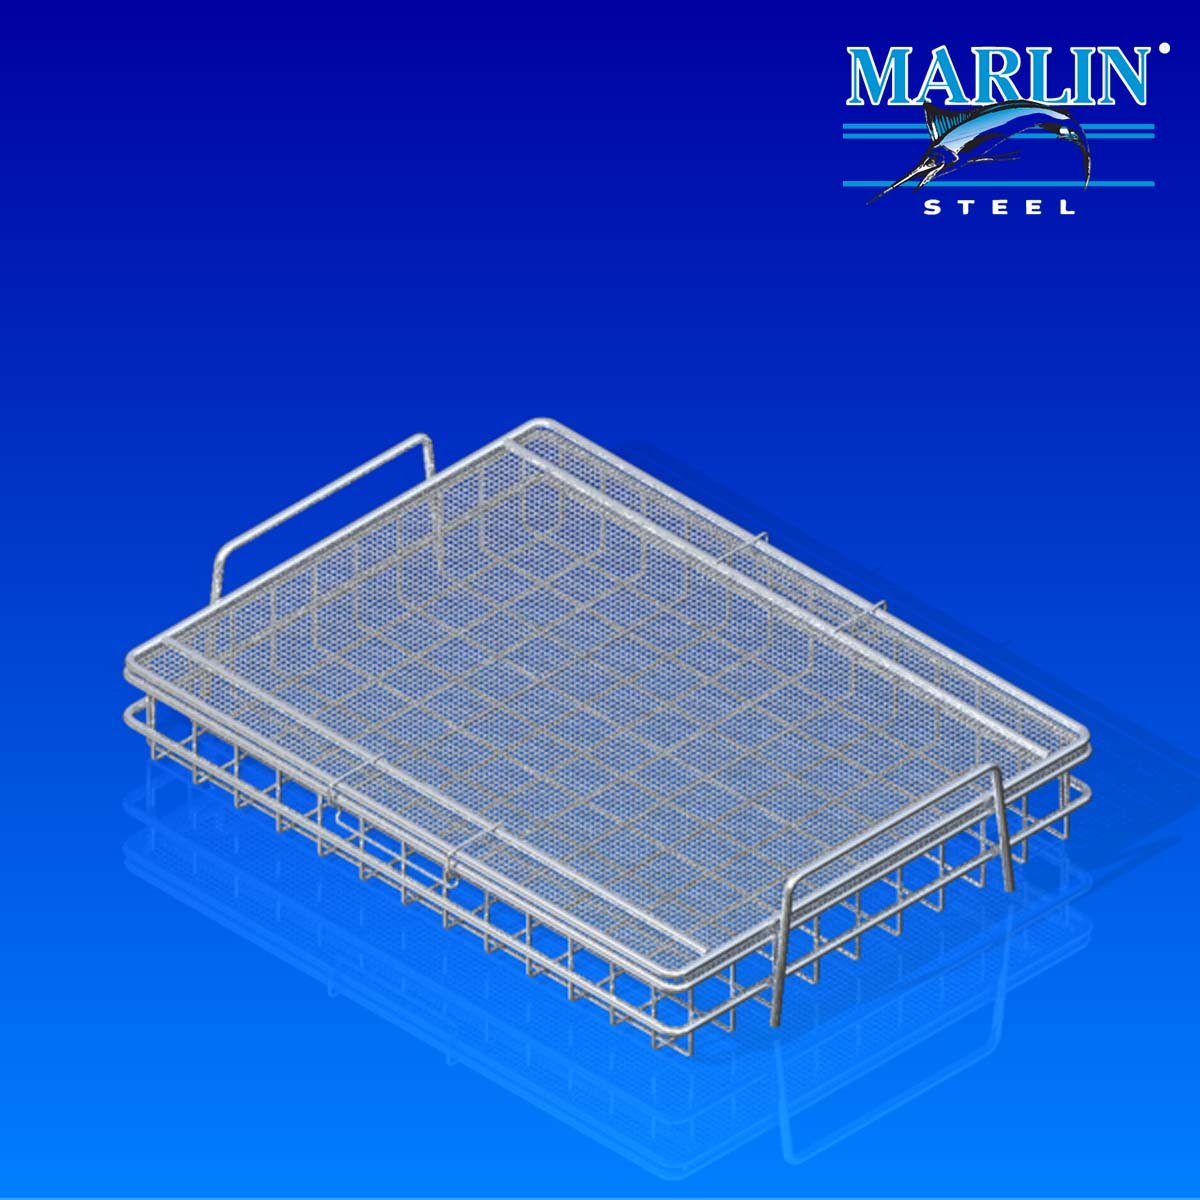 Marlin Steel wire baskets with lids 730002.jpg